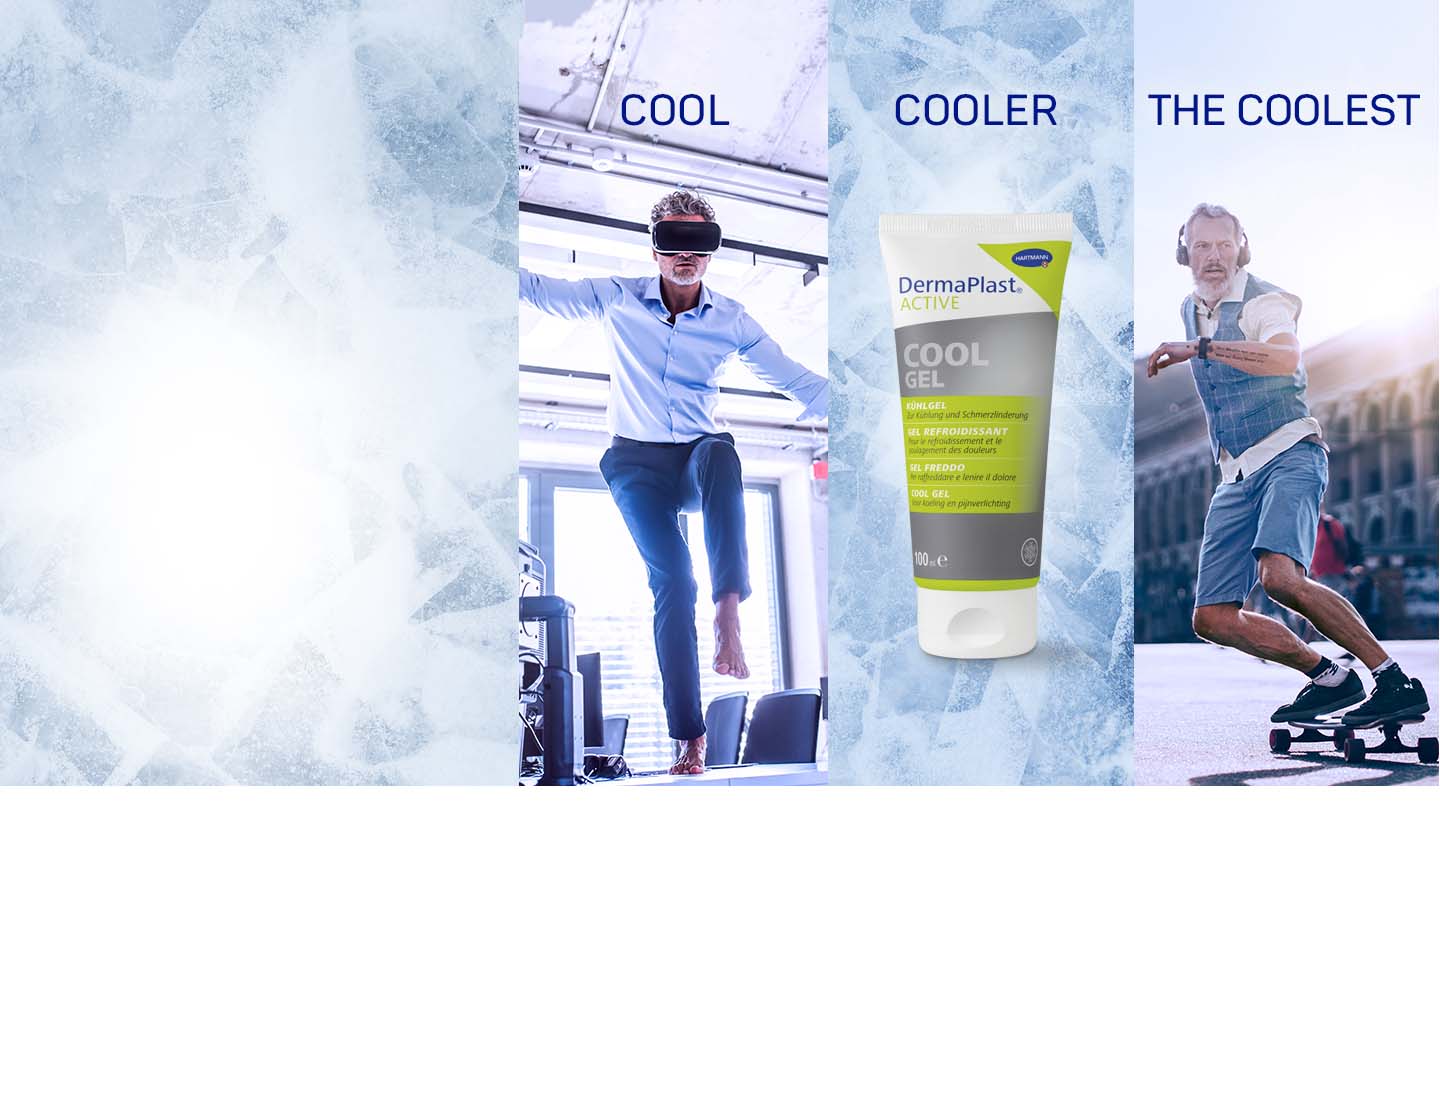 The cooler | Dermaplast ACTIVE